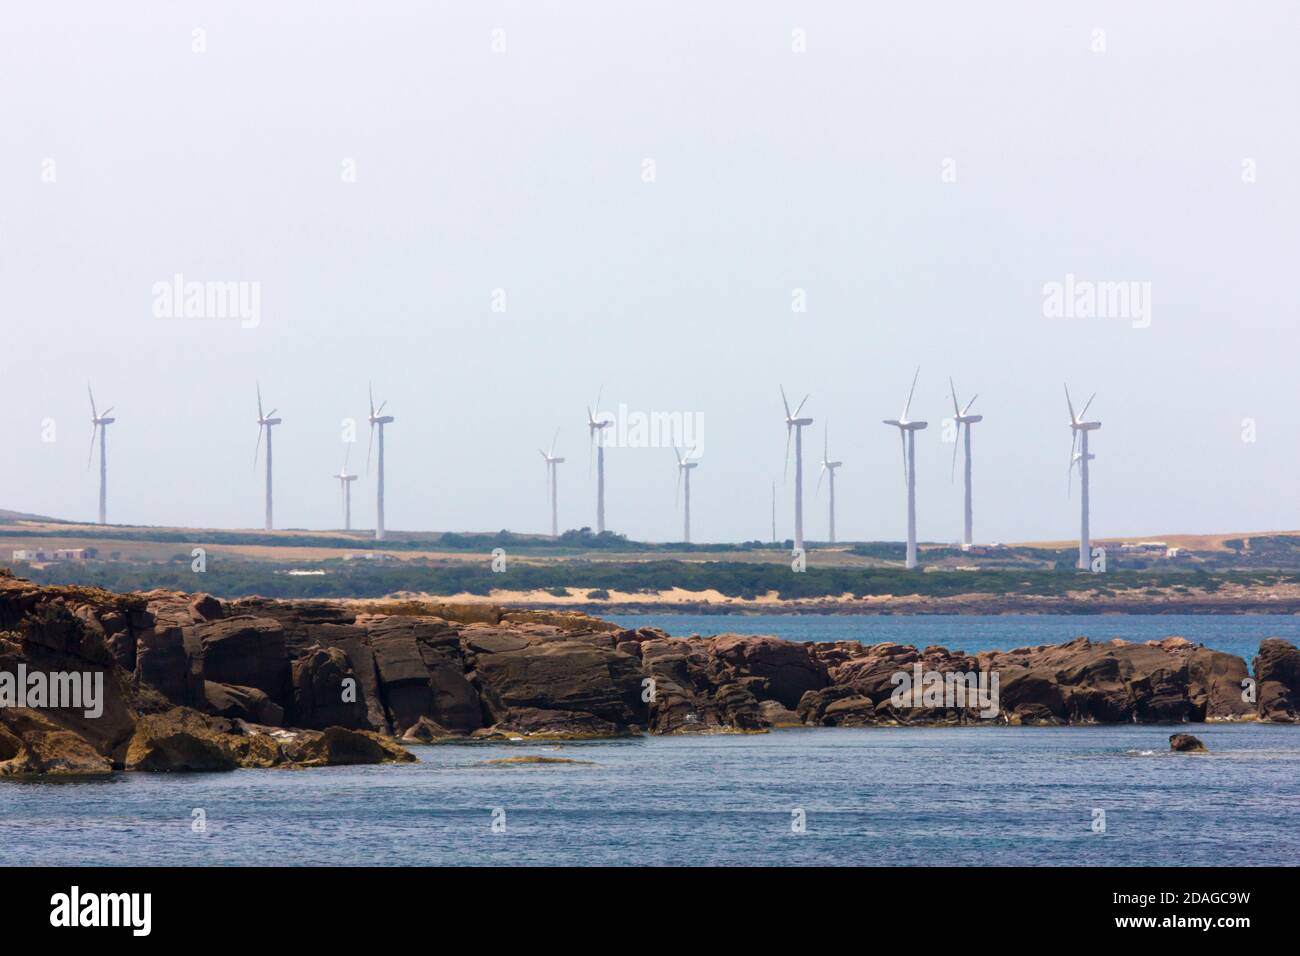 Wind turbines on the beach, Cap Bon, Tunisia Stock Photo